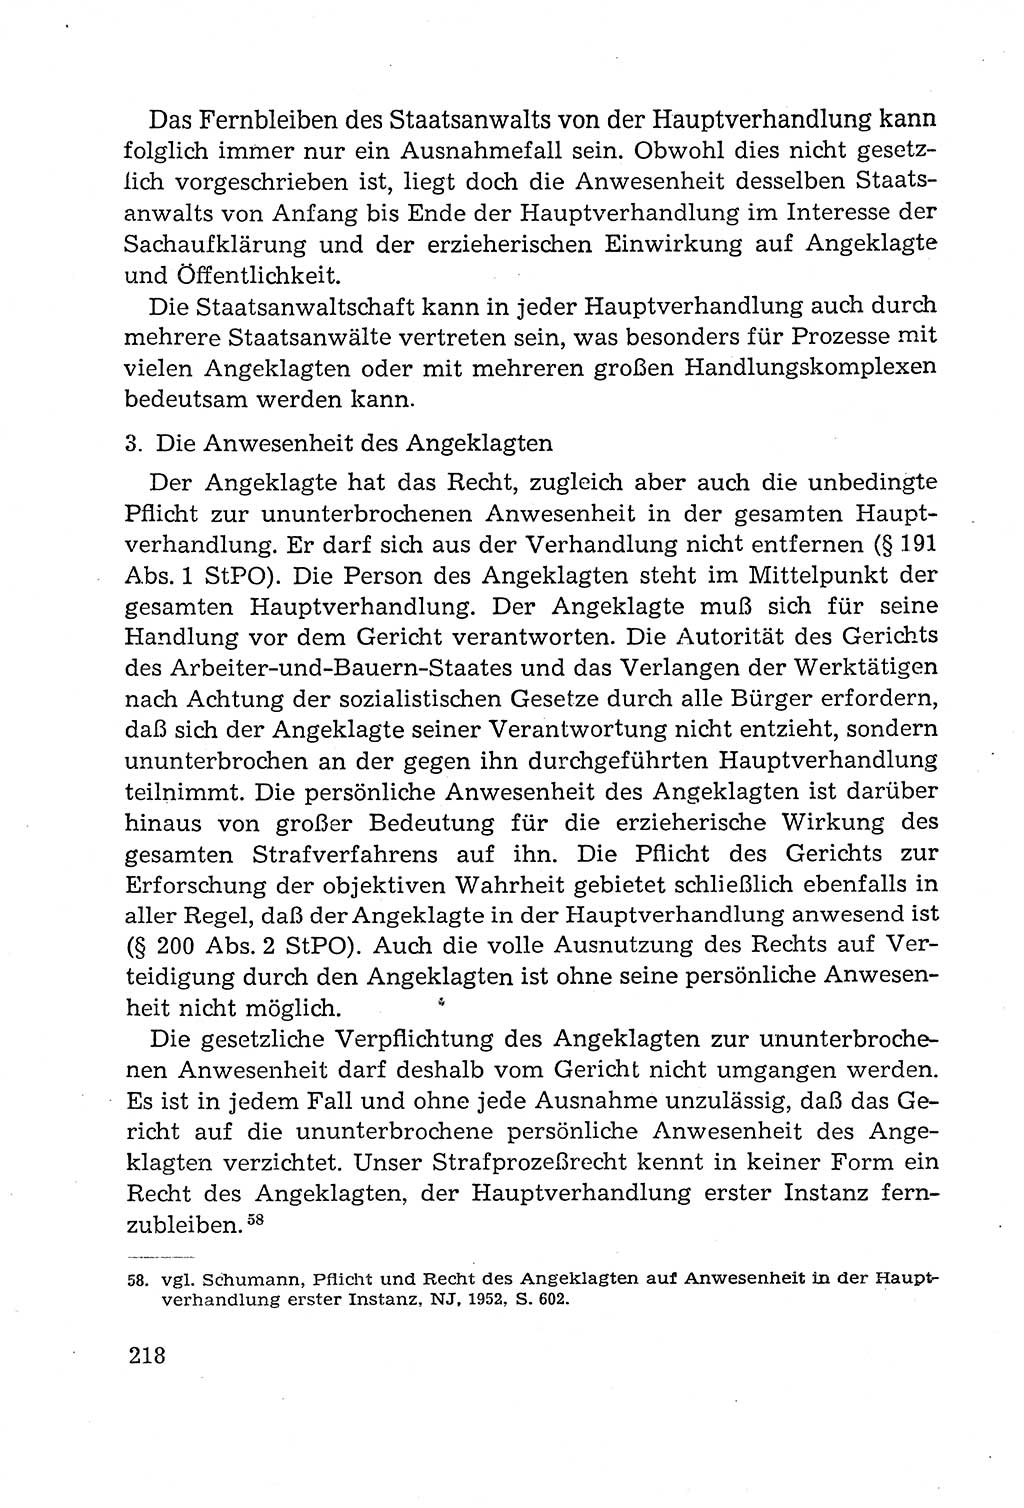 Leitfaden des Strafprozeßrechts der Deutschen Demokratischen Republik (DDR) 1959, Seite 218 (LF StPR DDR 1959, S. 218)